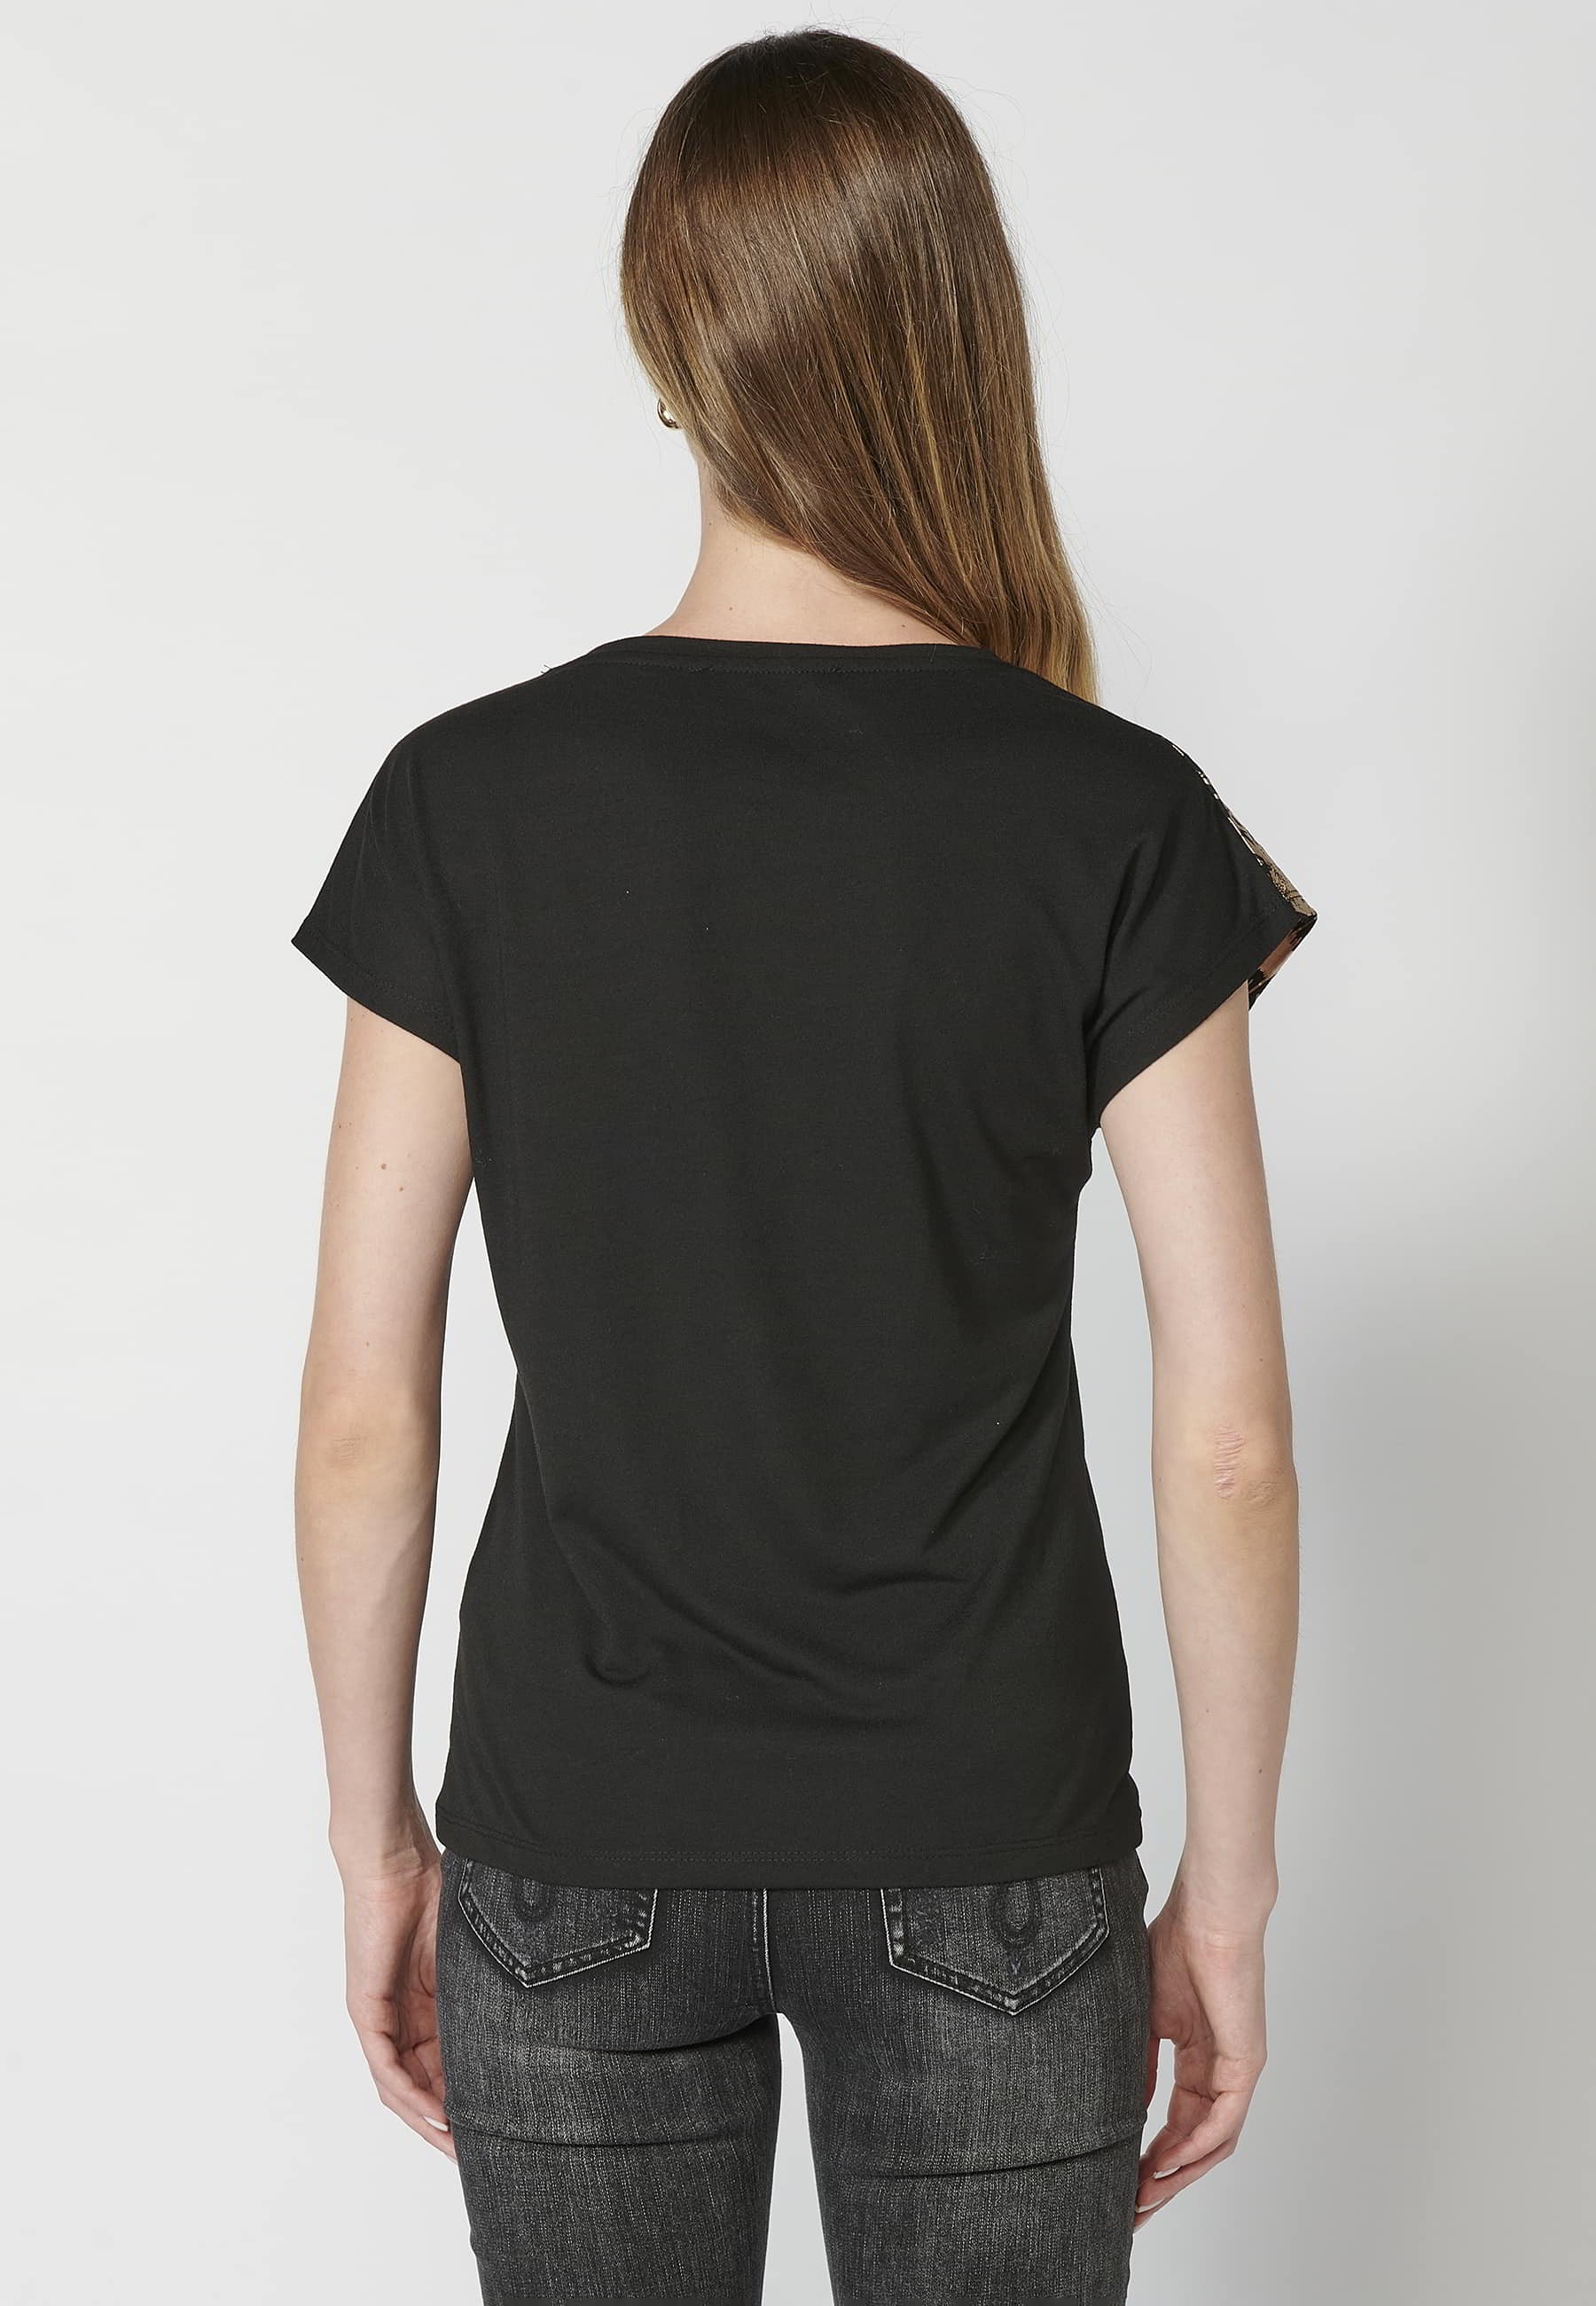 Camiseta de manga corta de algodón cuello redondo estampado frontal flores color negro para mujer 2